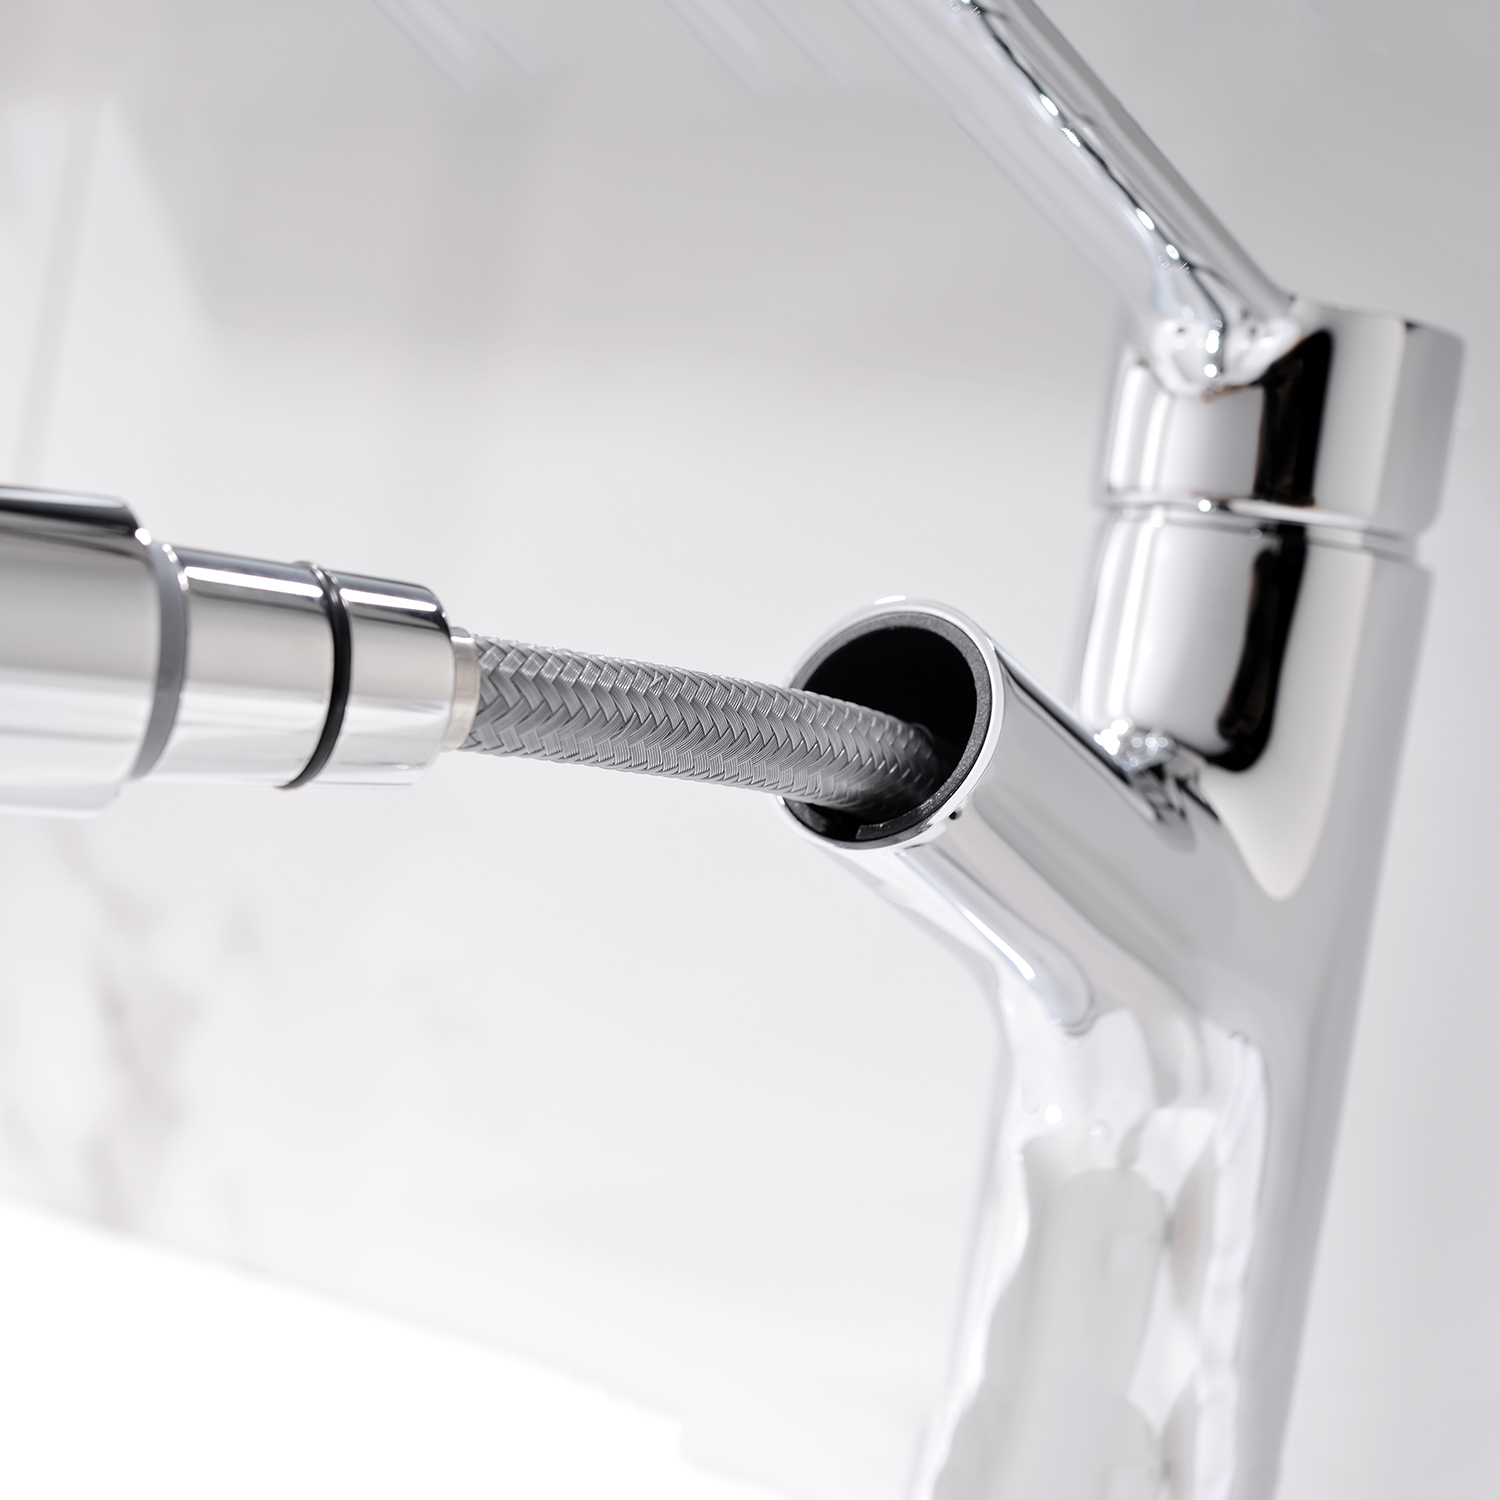 Aquacubic Factory Supplier 360 drehbare Chrom-moderne Waschbeckenarmaturen Ziehen Sie den Wasserhahn im Badezimmer heraus